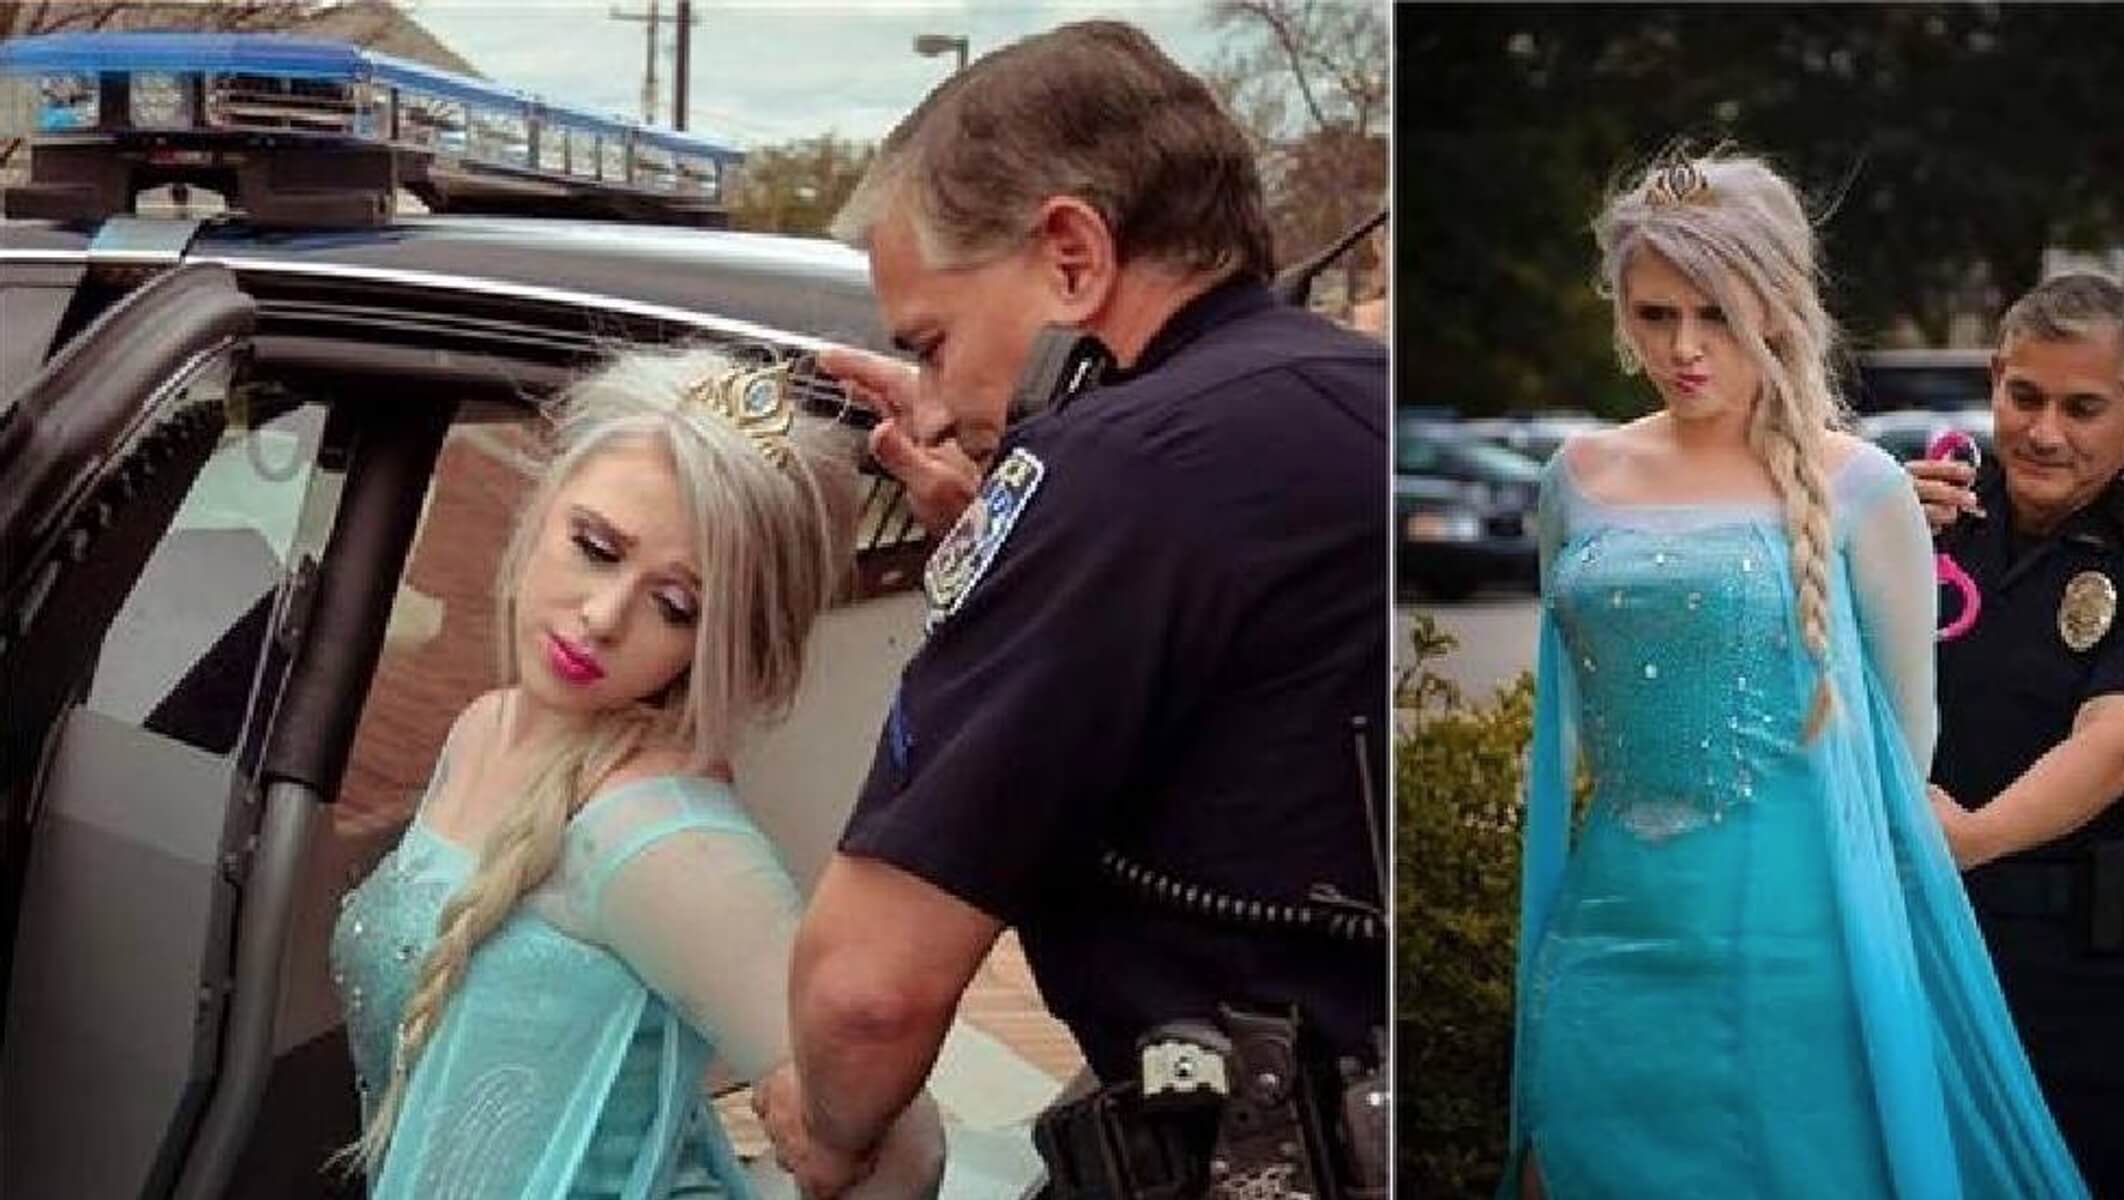 Σοκ! Συνέλαβαν την Έλσα από το Frozen για το πολικό ψύχος στις ΗΠΑ! [pics]